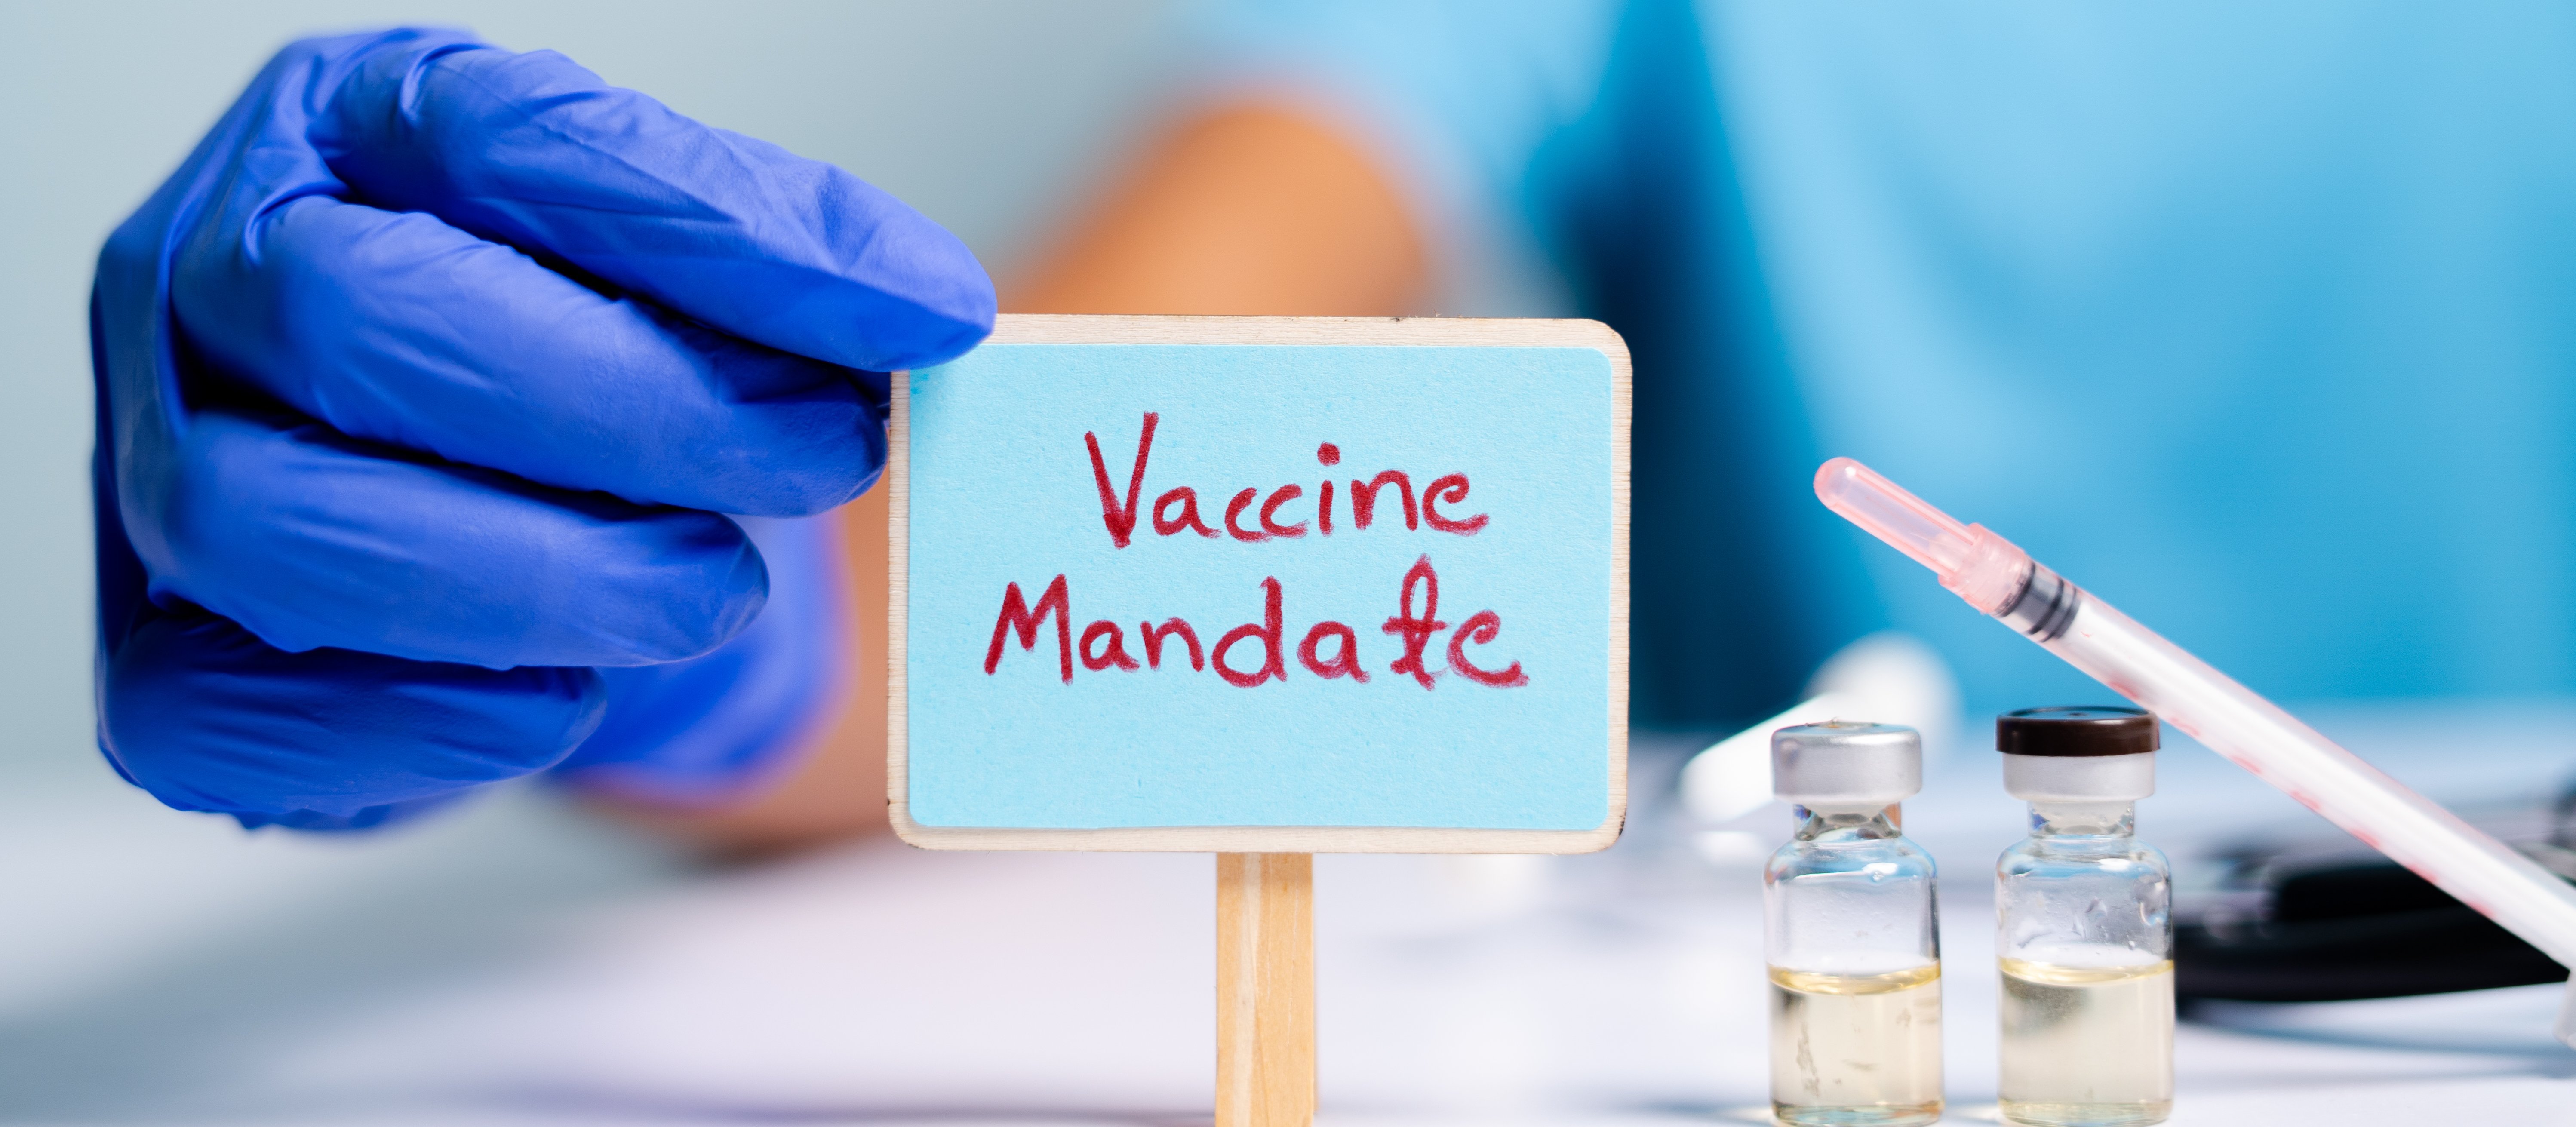 Vaccine mandate